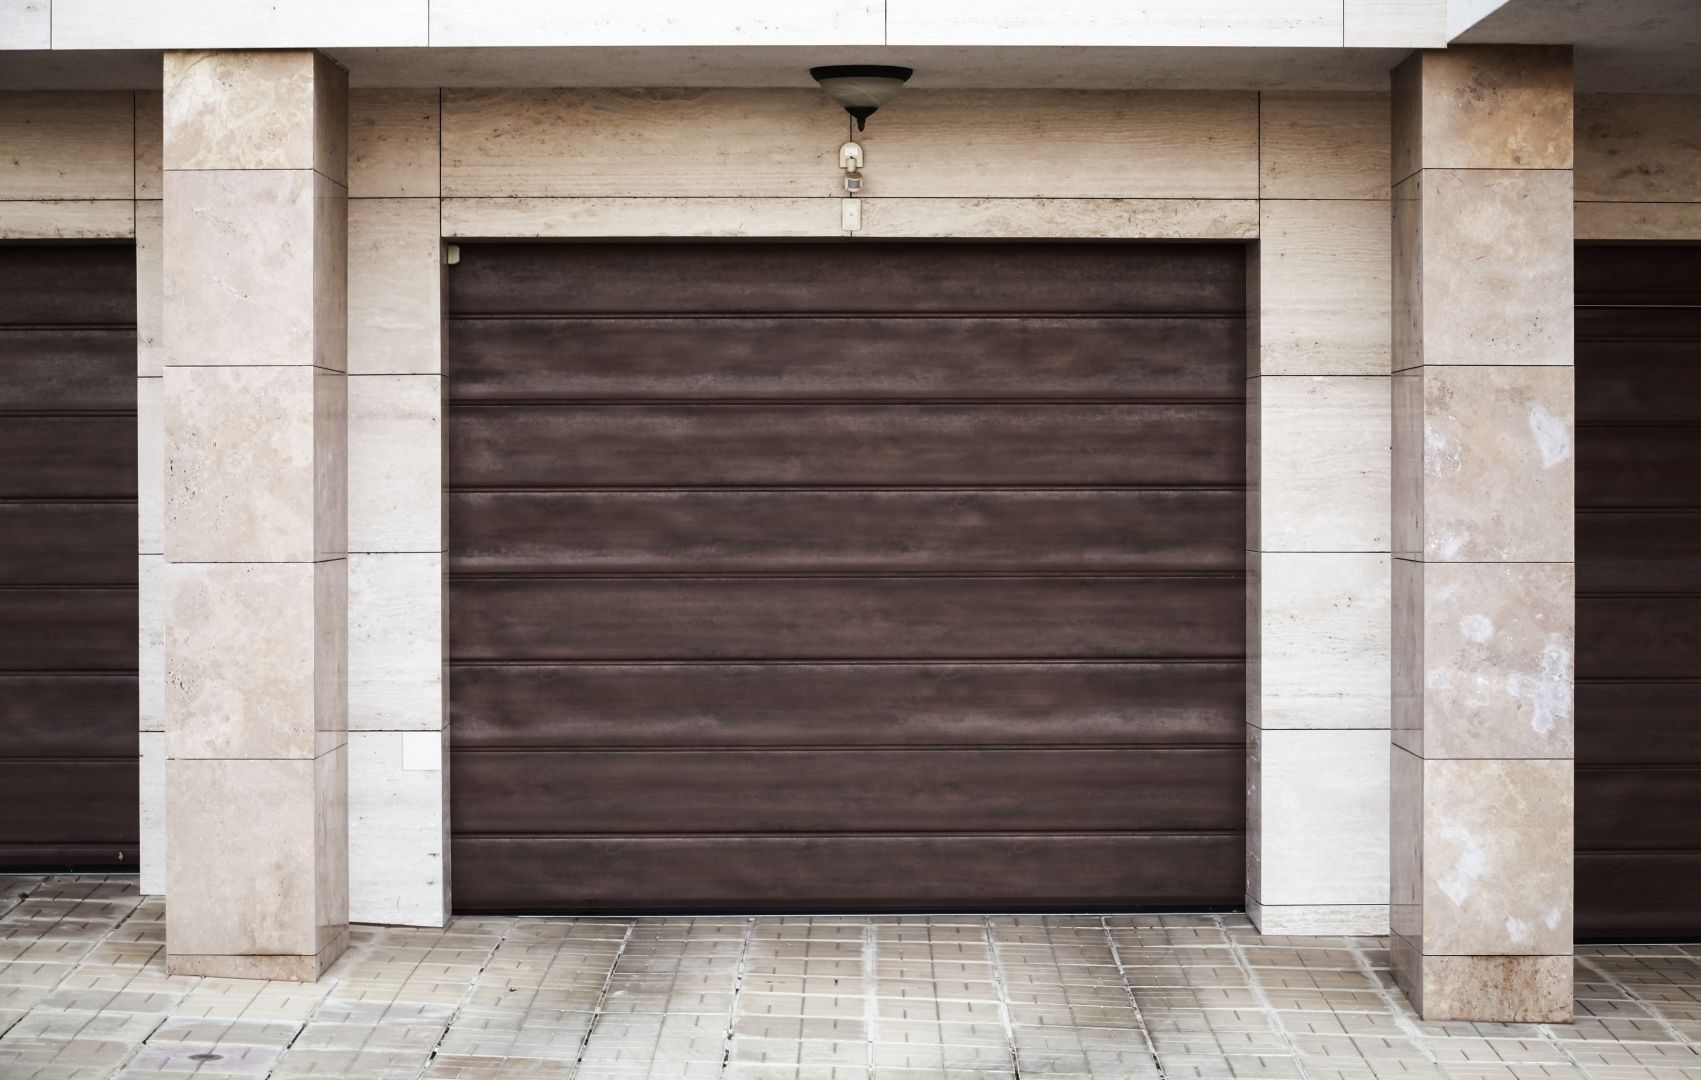 Poptávka na dodávka a montáž sekčních garážových vrat (Montáž oken, dveří a vrat) - Uherské Hradiště